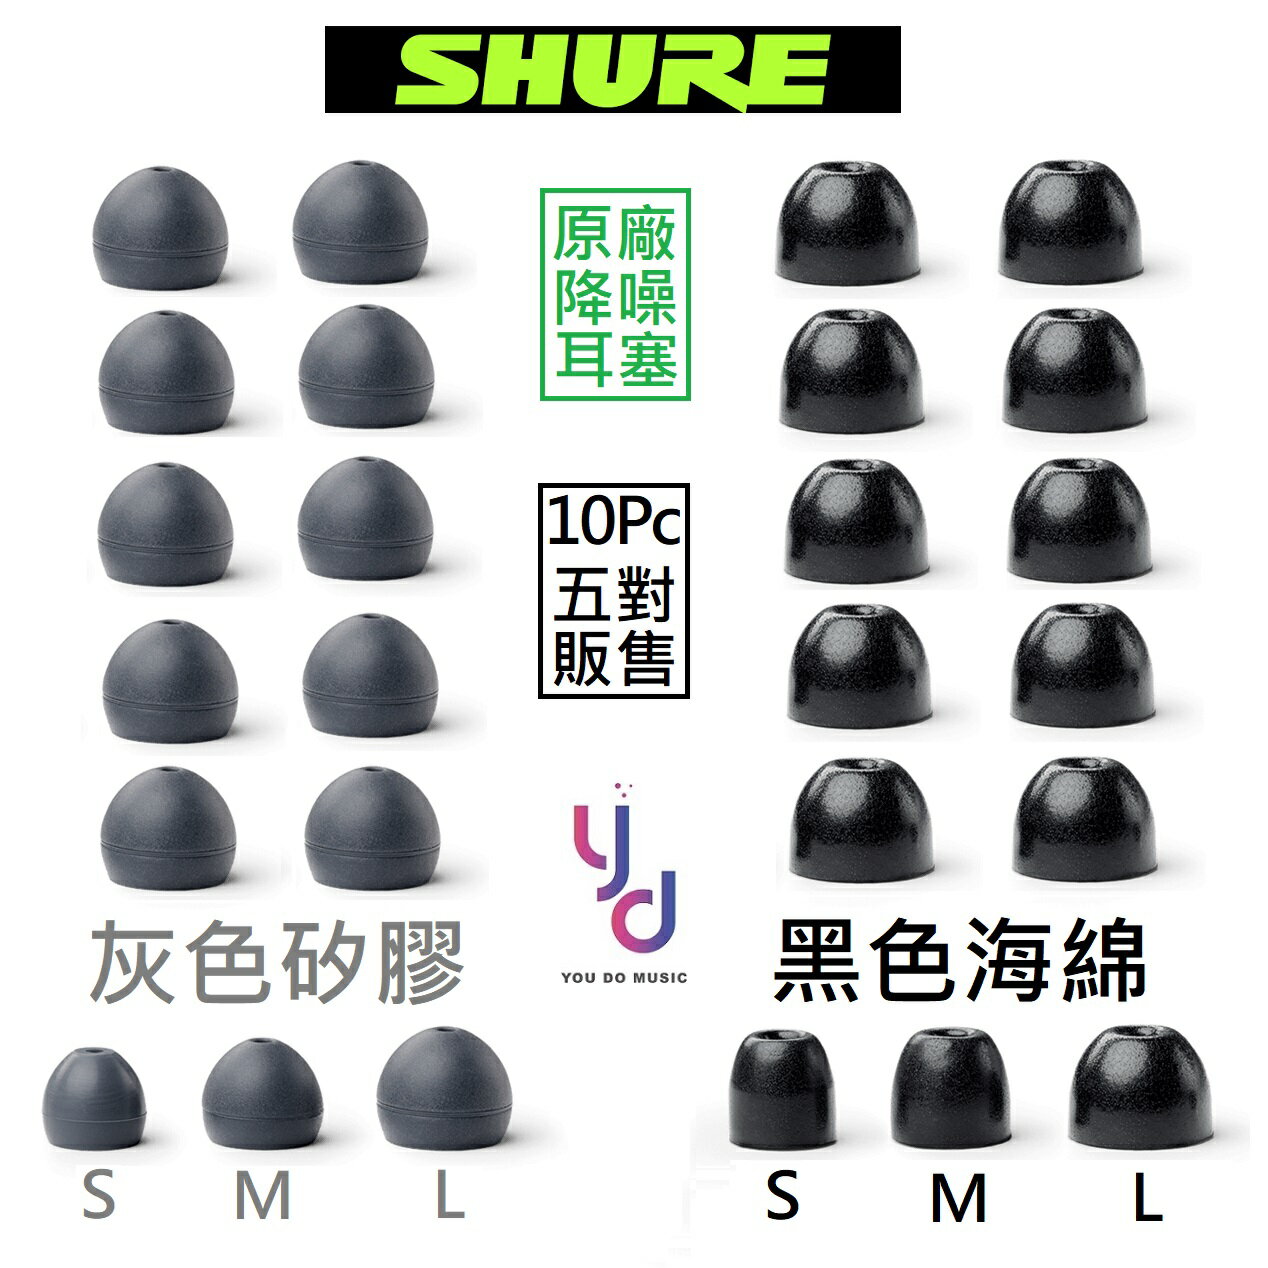 現貨可分期 Shure 原廠 EABKF1-海綿 EASFX1-矽膠 SE115,215,315,425,535,846 耳機 耳塞